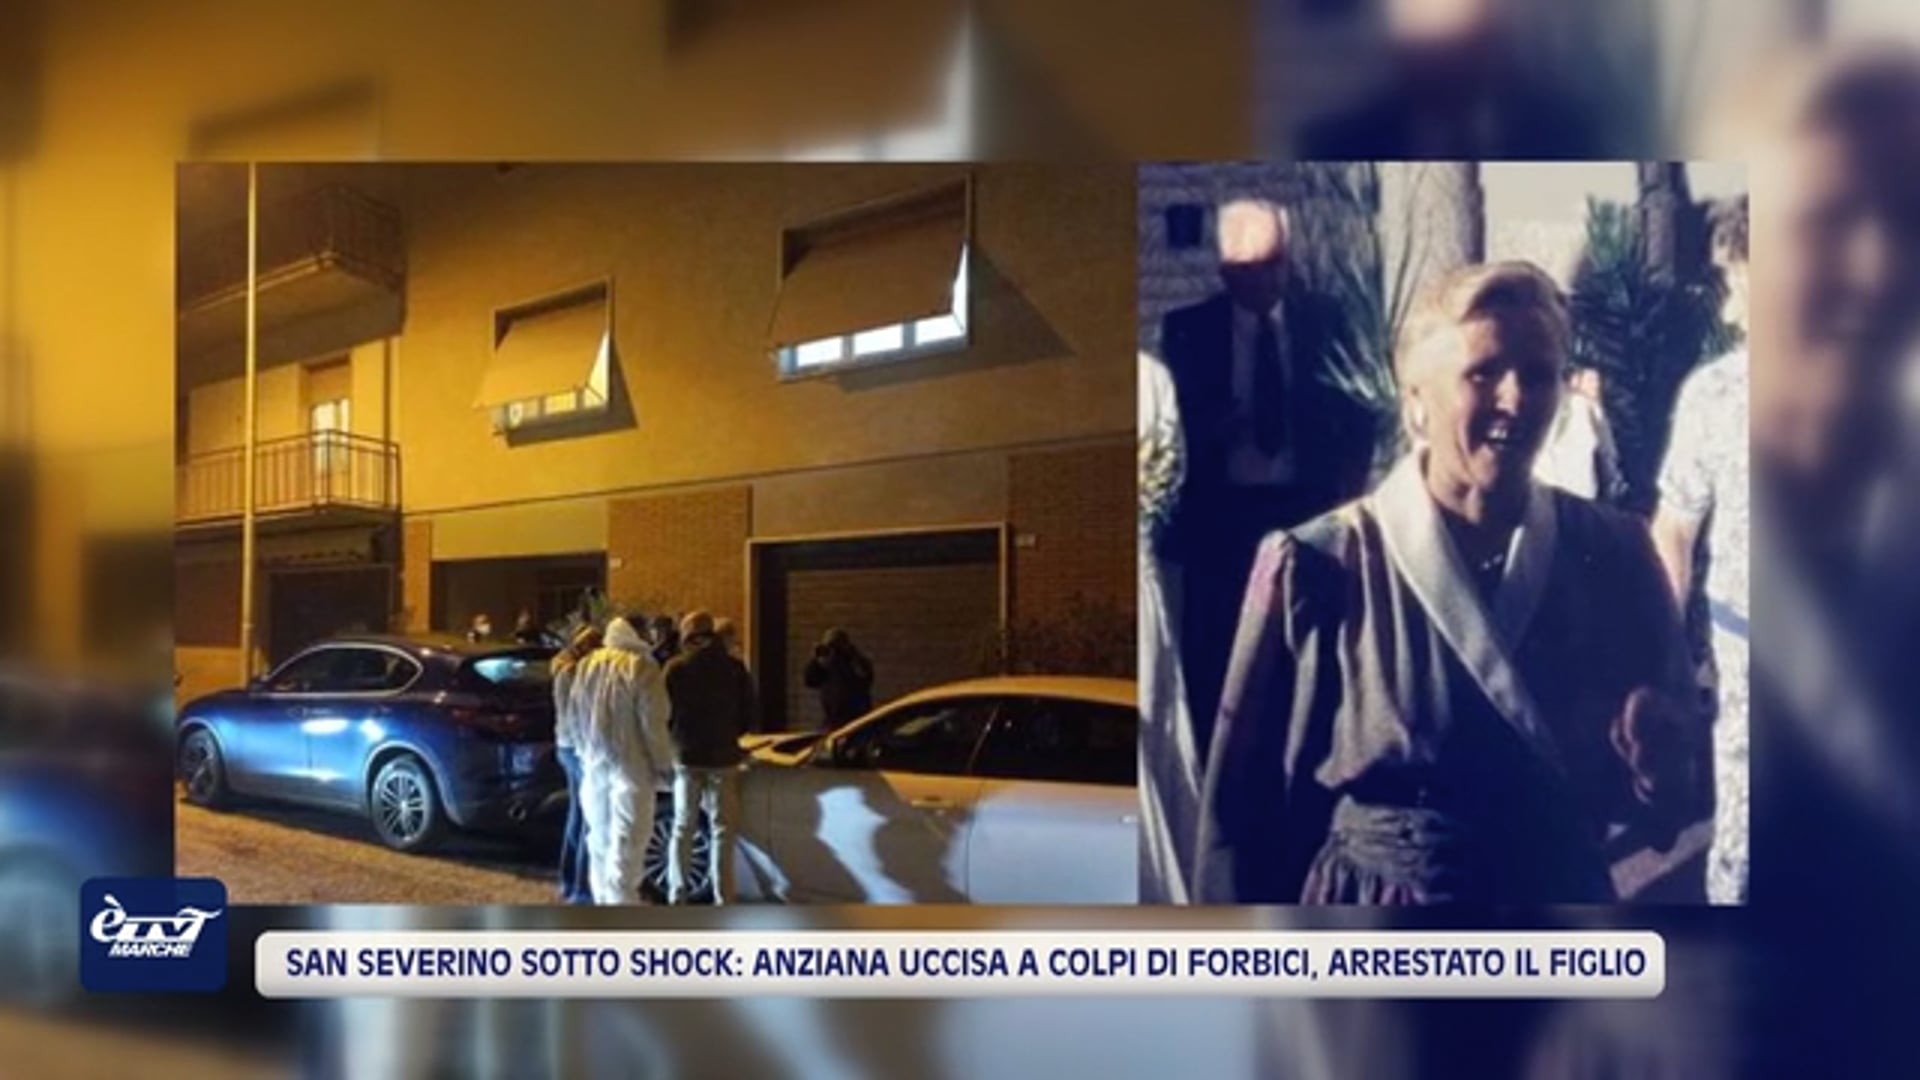 San Severino sotto shock: anziana uccisa a colpi di forbici, arrestato il figlio  - VIDEO